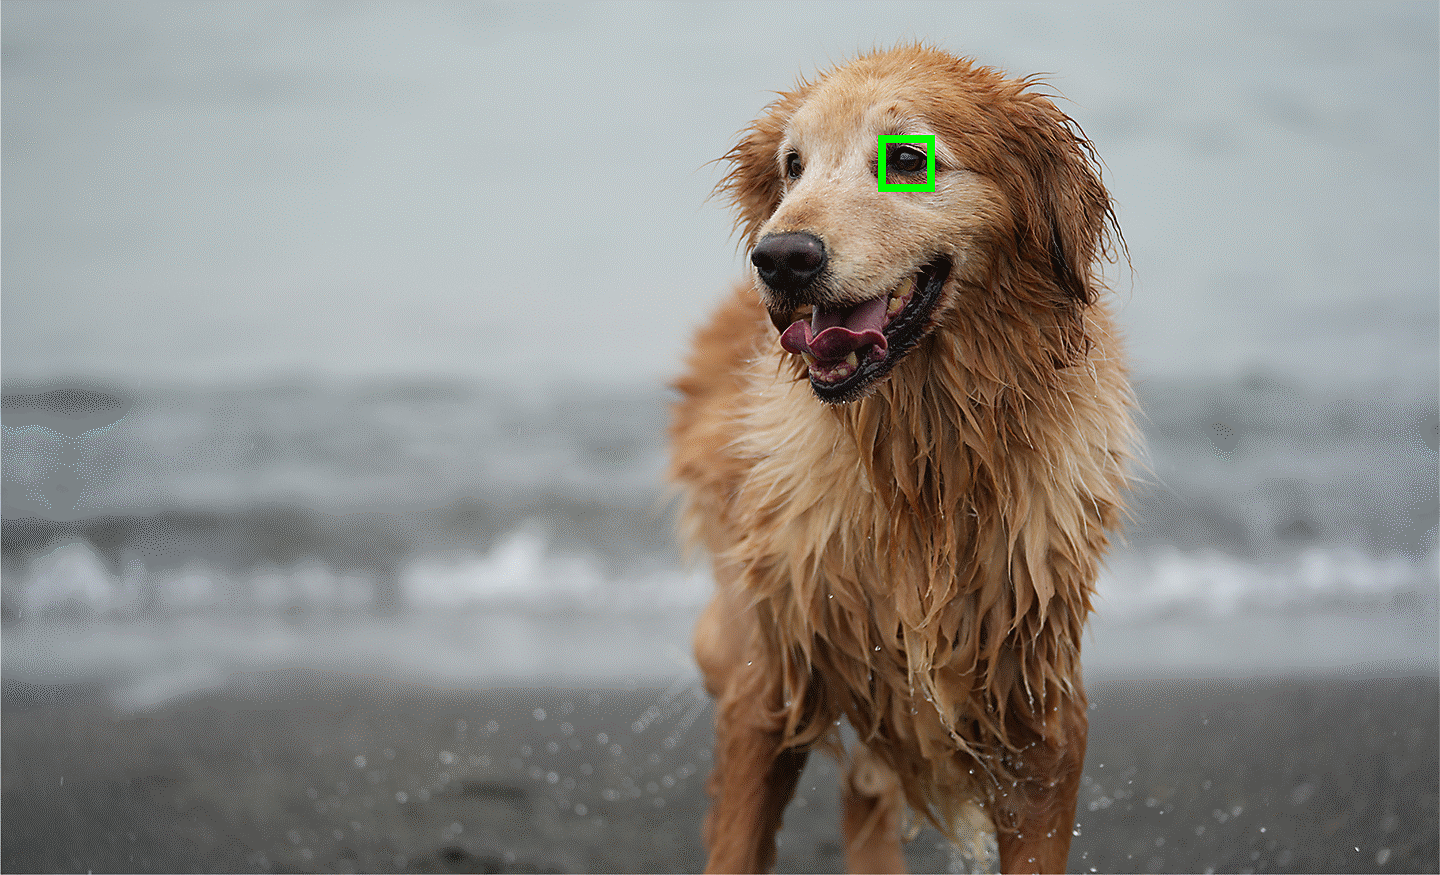 صورة فوتوغرافية توضح استخدام الضبط البؤري التلقائي بالعين في الوقت الحقيقي للحيوانات، مع ضبط البؤرة على عين الكلب الهدف